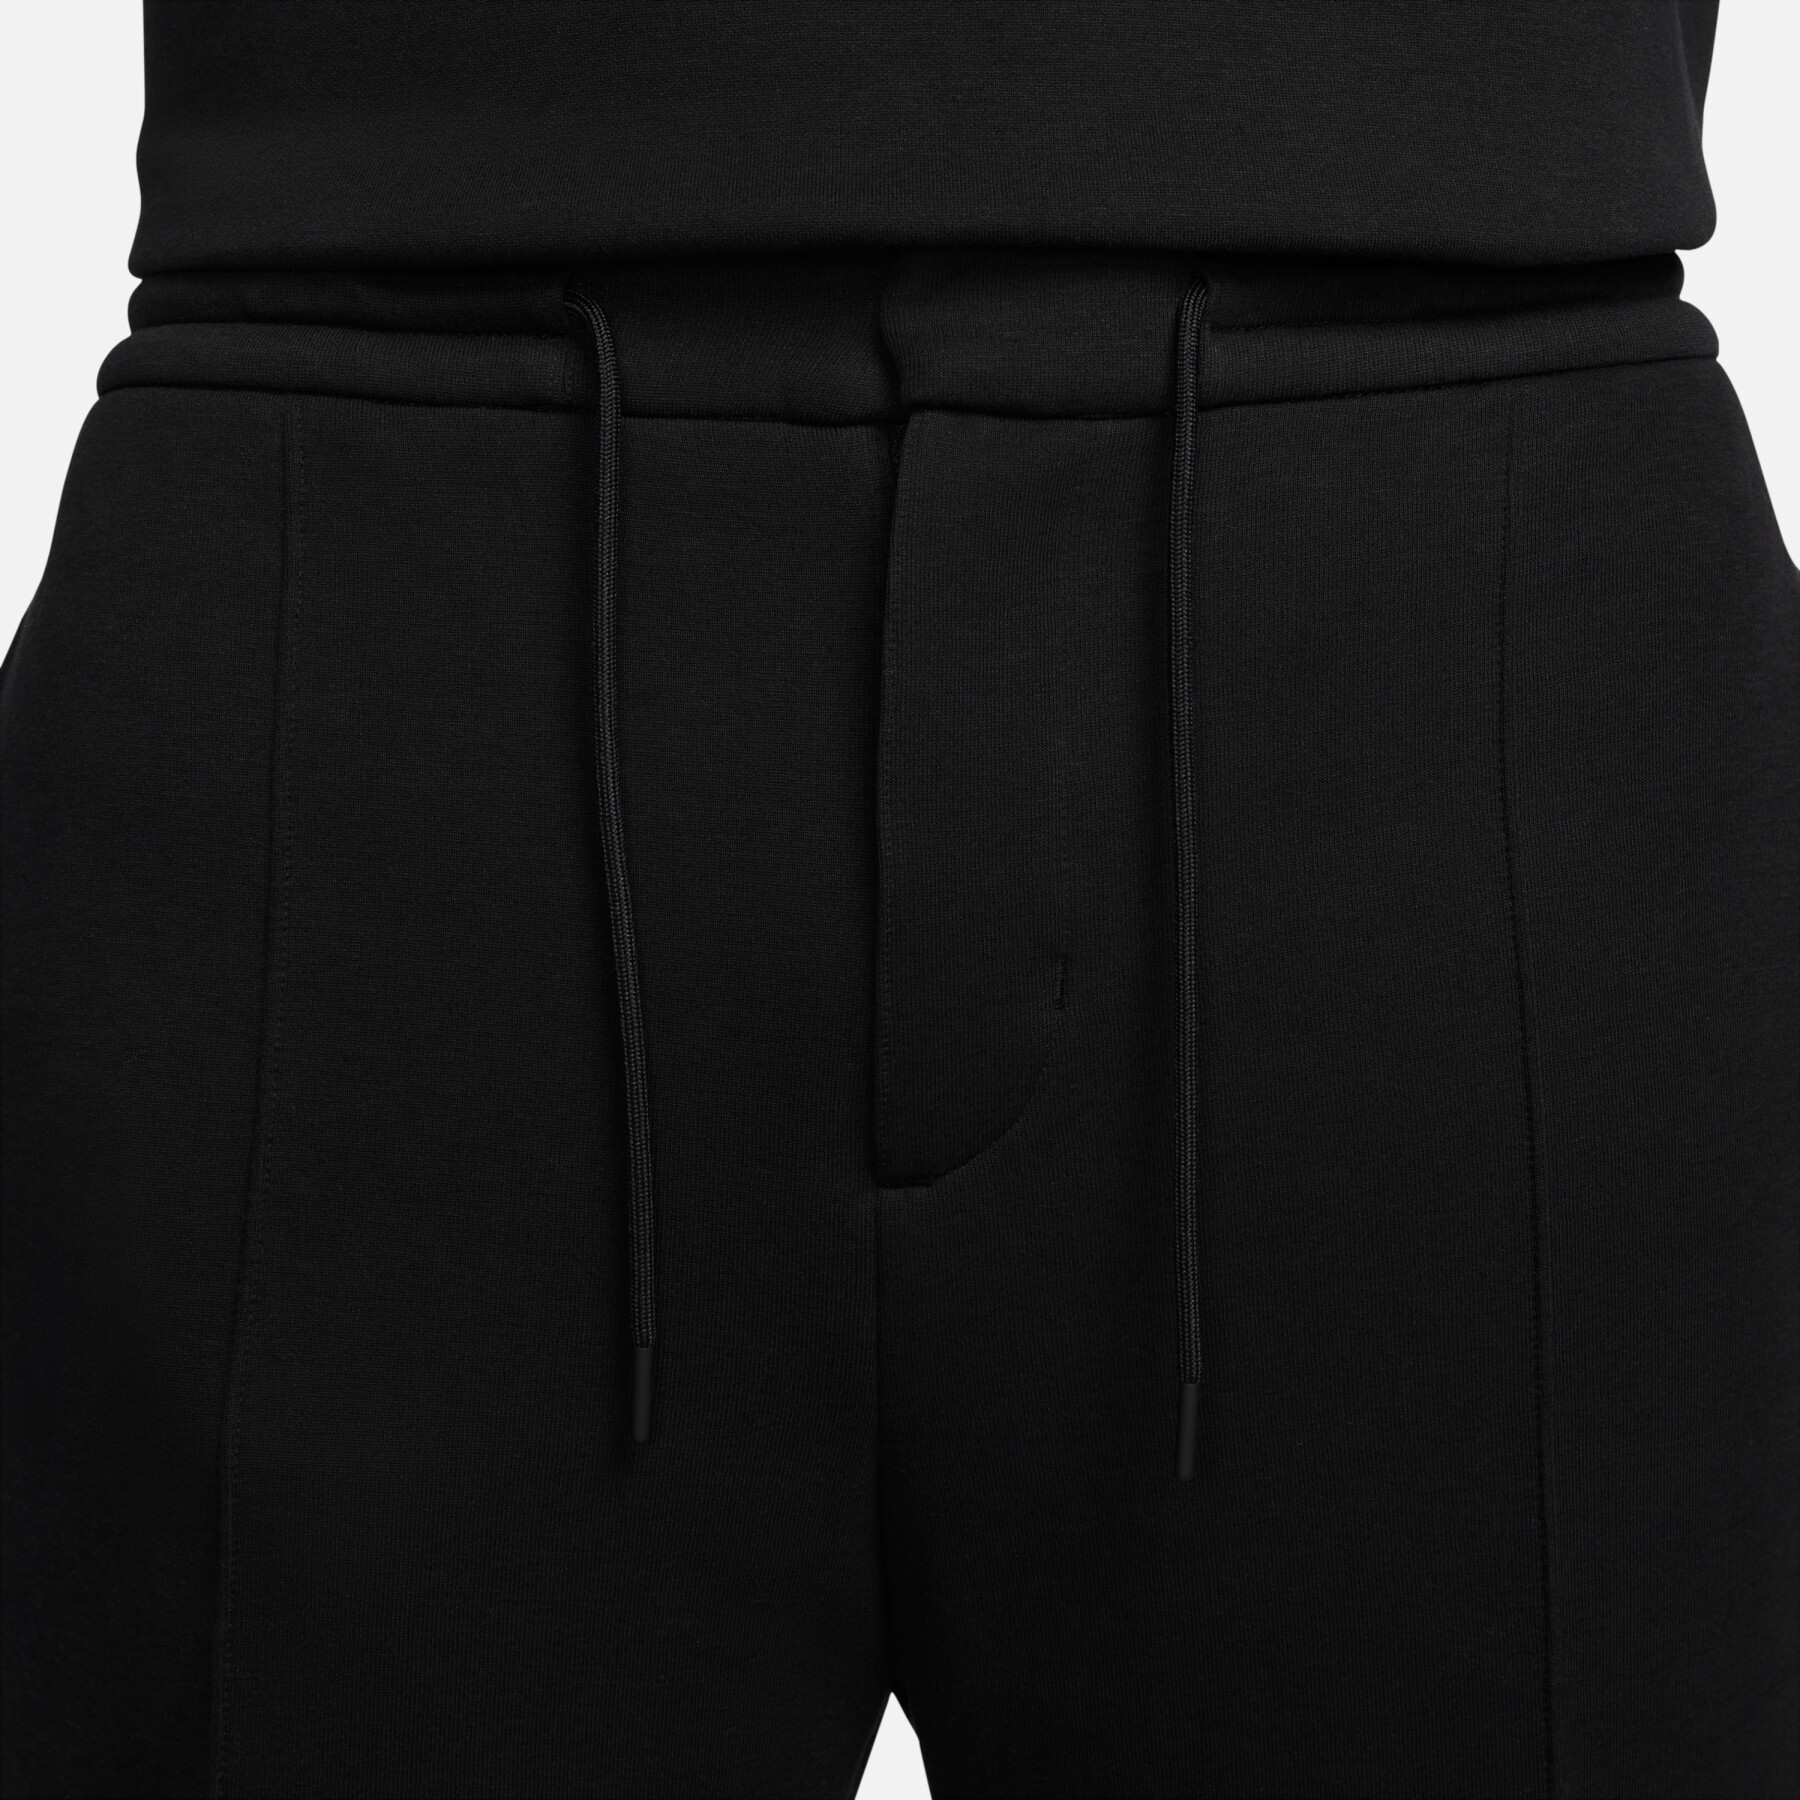 Lockere Jogginghose mit offenem Saum Nike Tech Fleece Reimagined